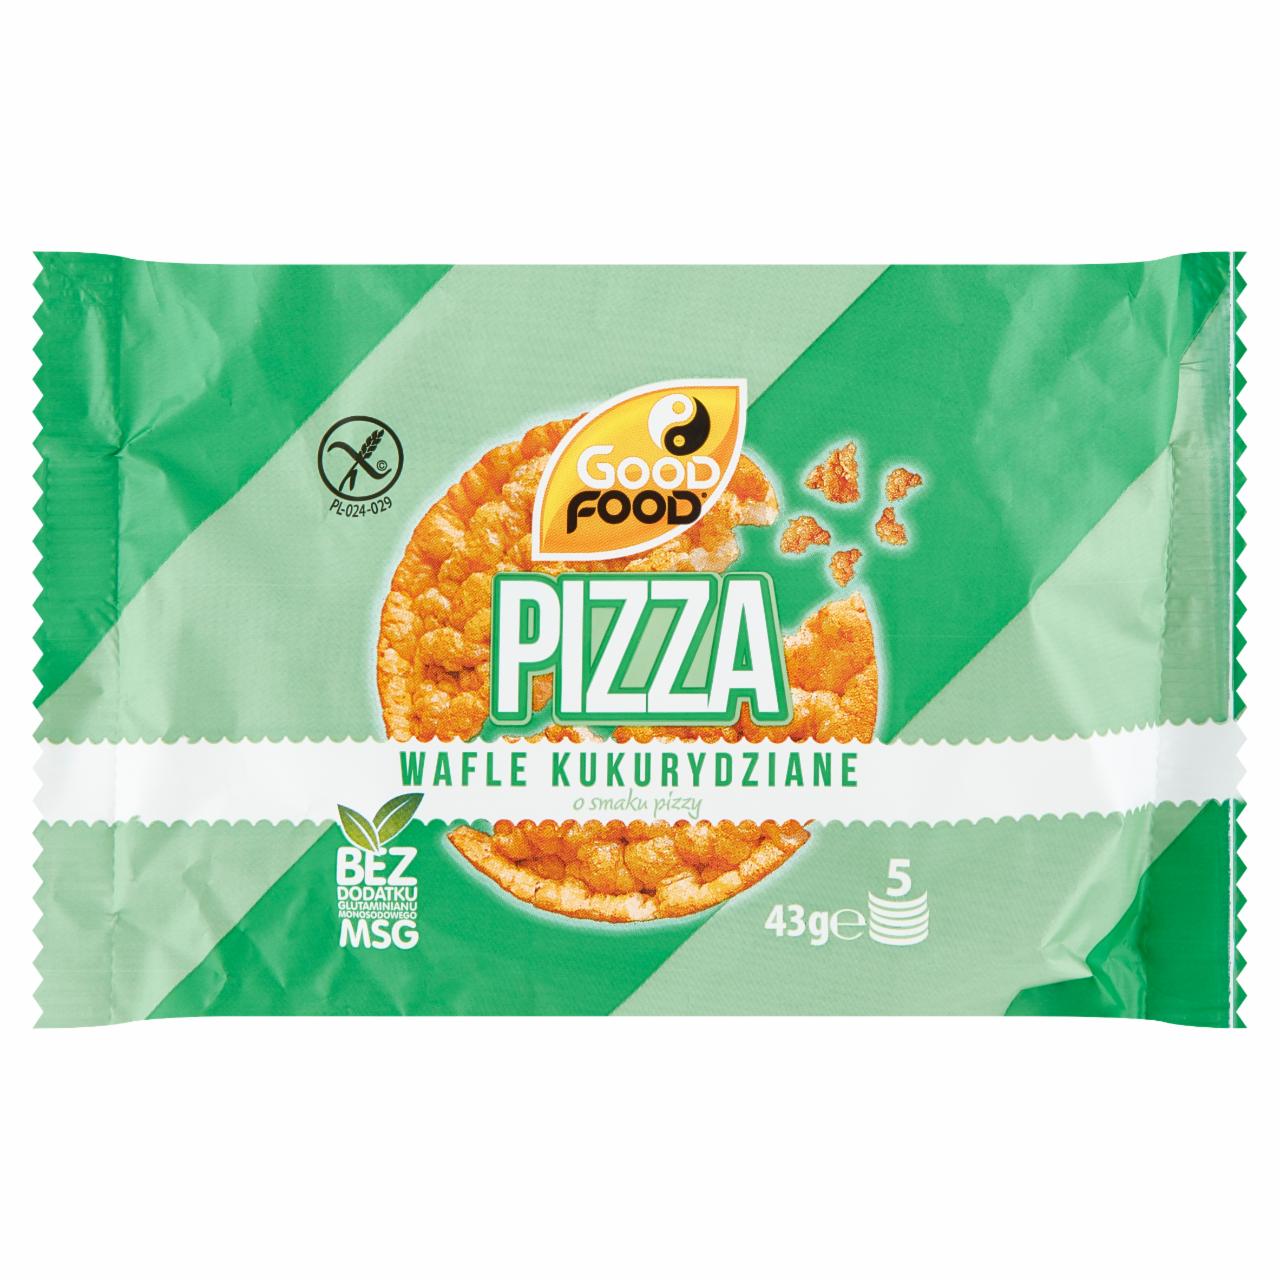 Zdjęcia - Good Food Wafle kukurydziane o smaku pizzy 43 g (5 sztuk)